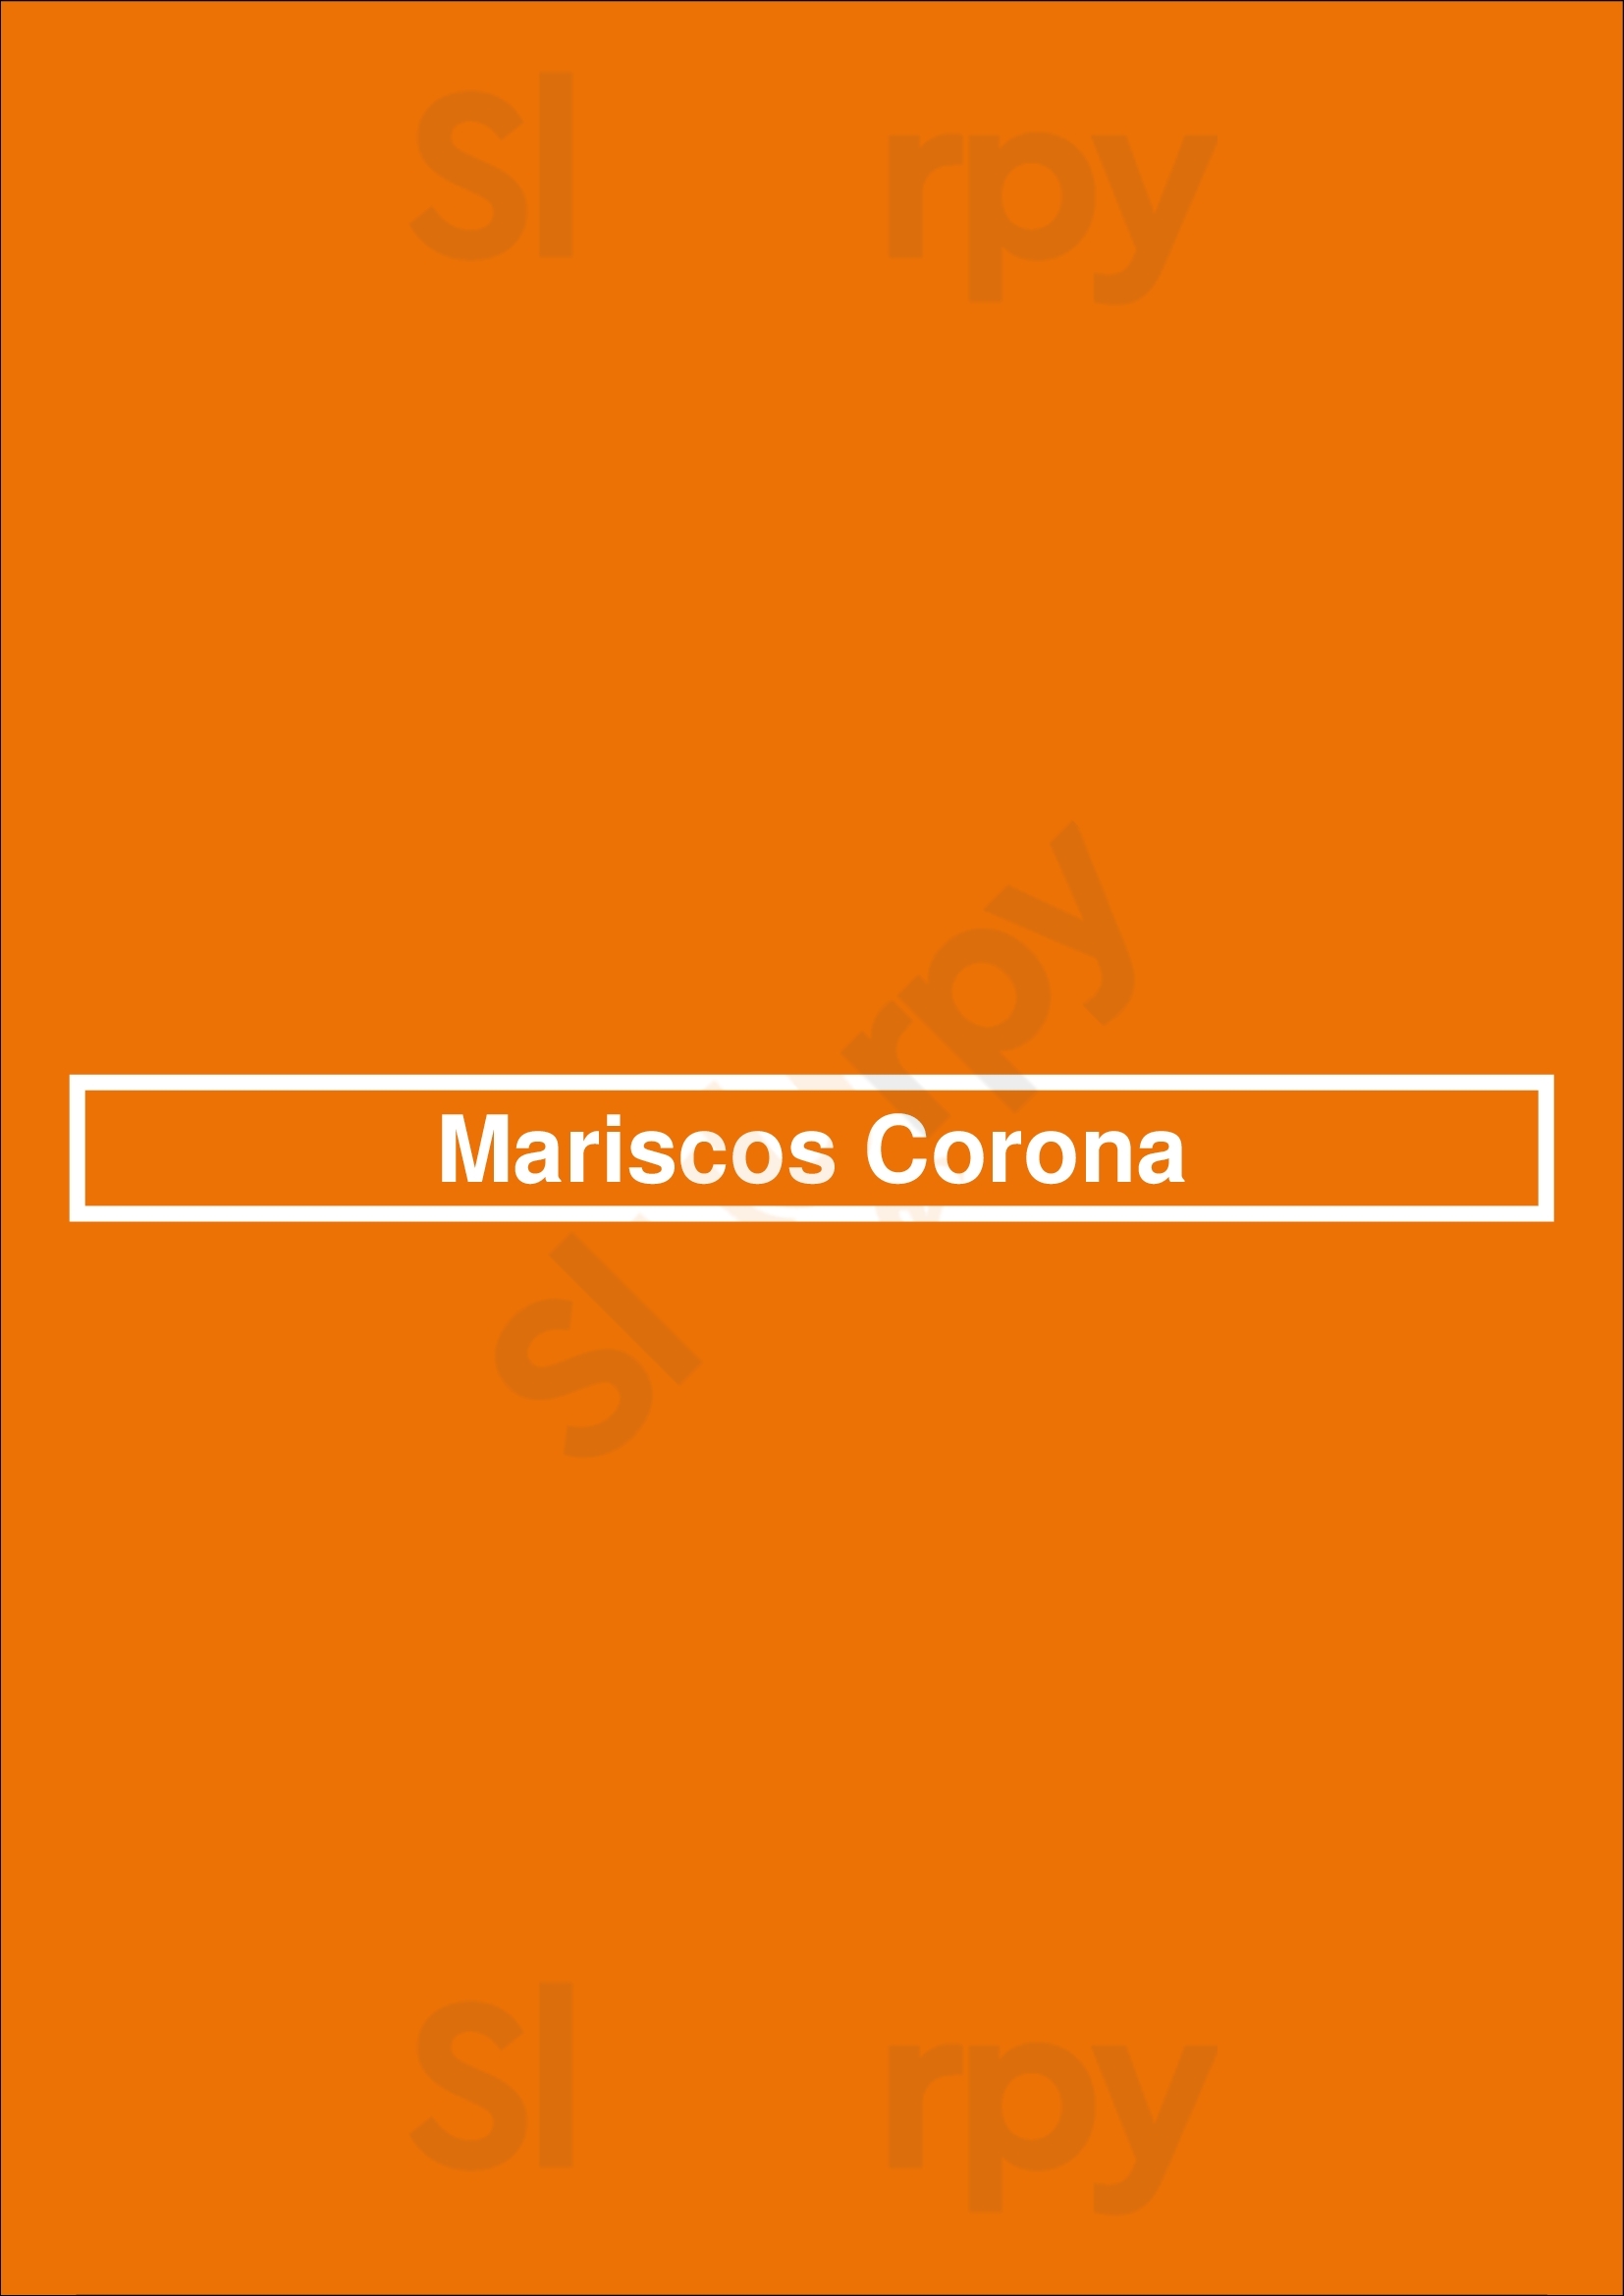 Mariscos Corona Los Angeles Menu - 1